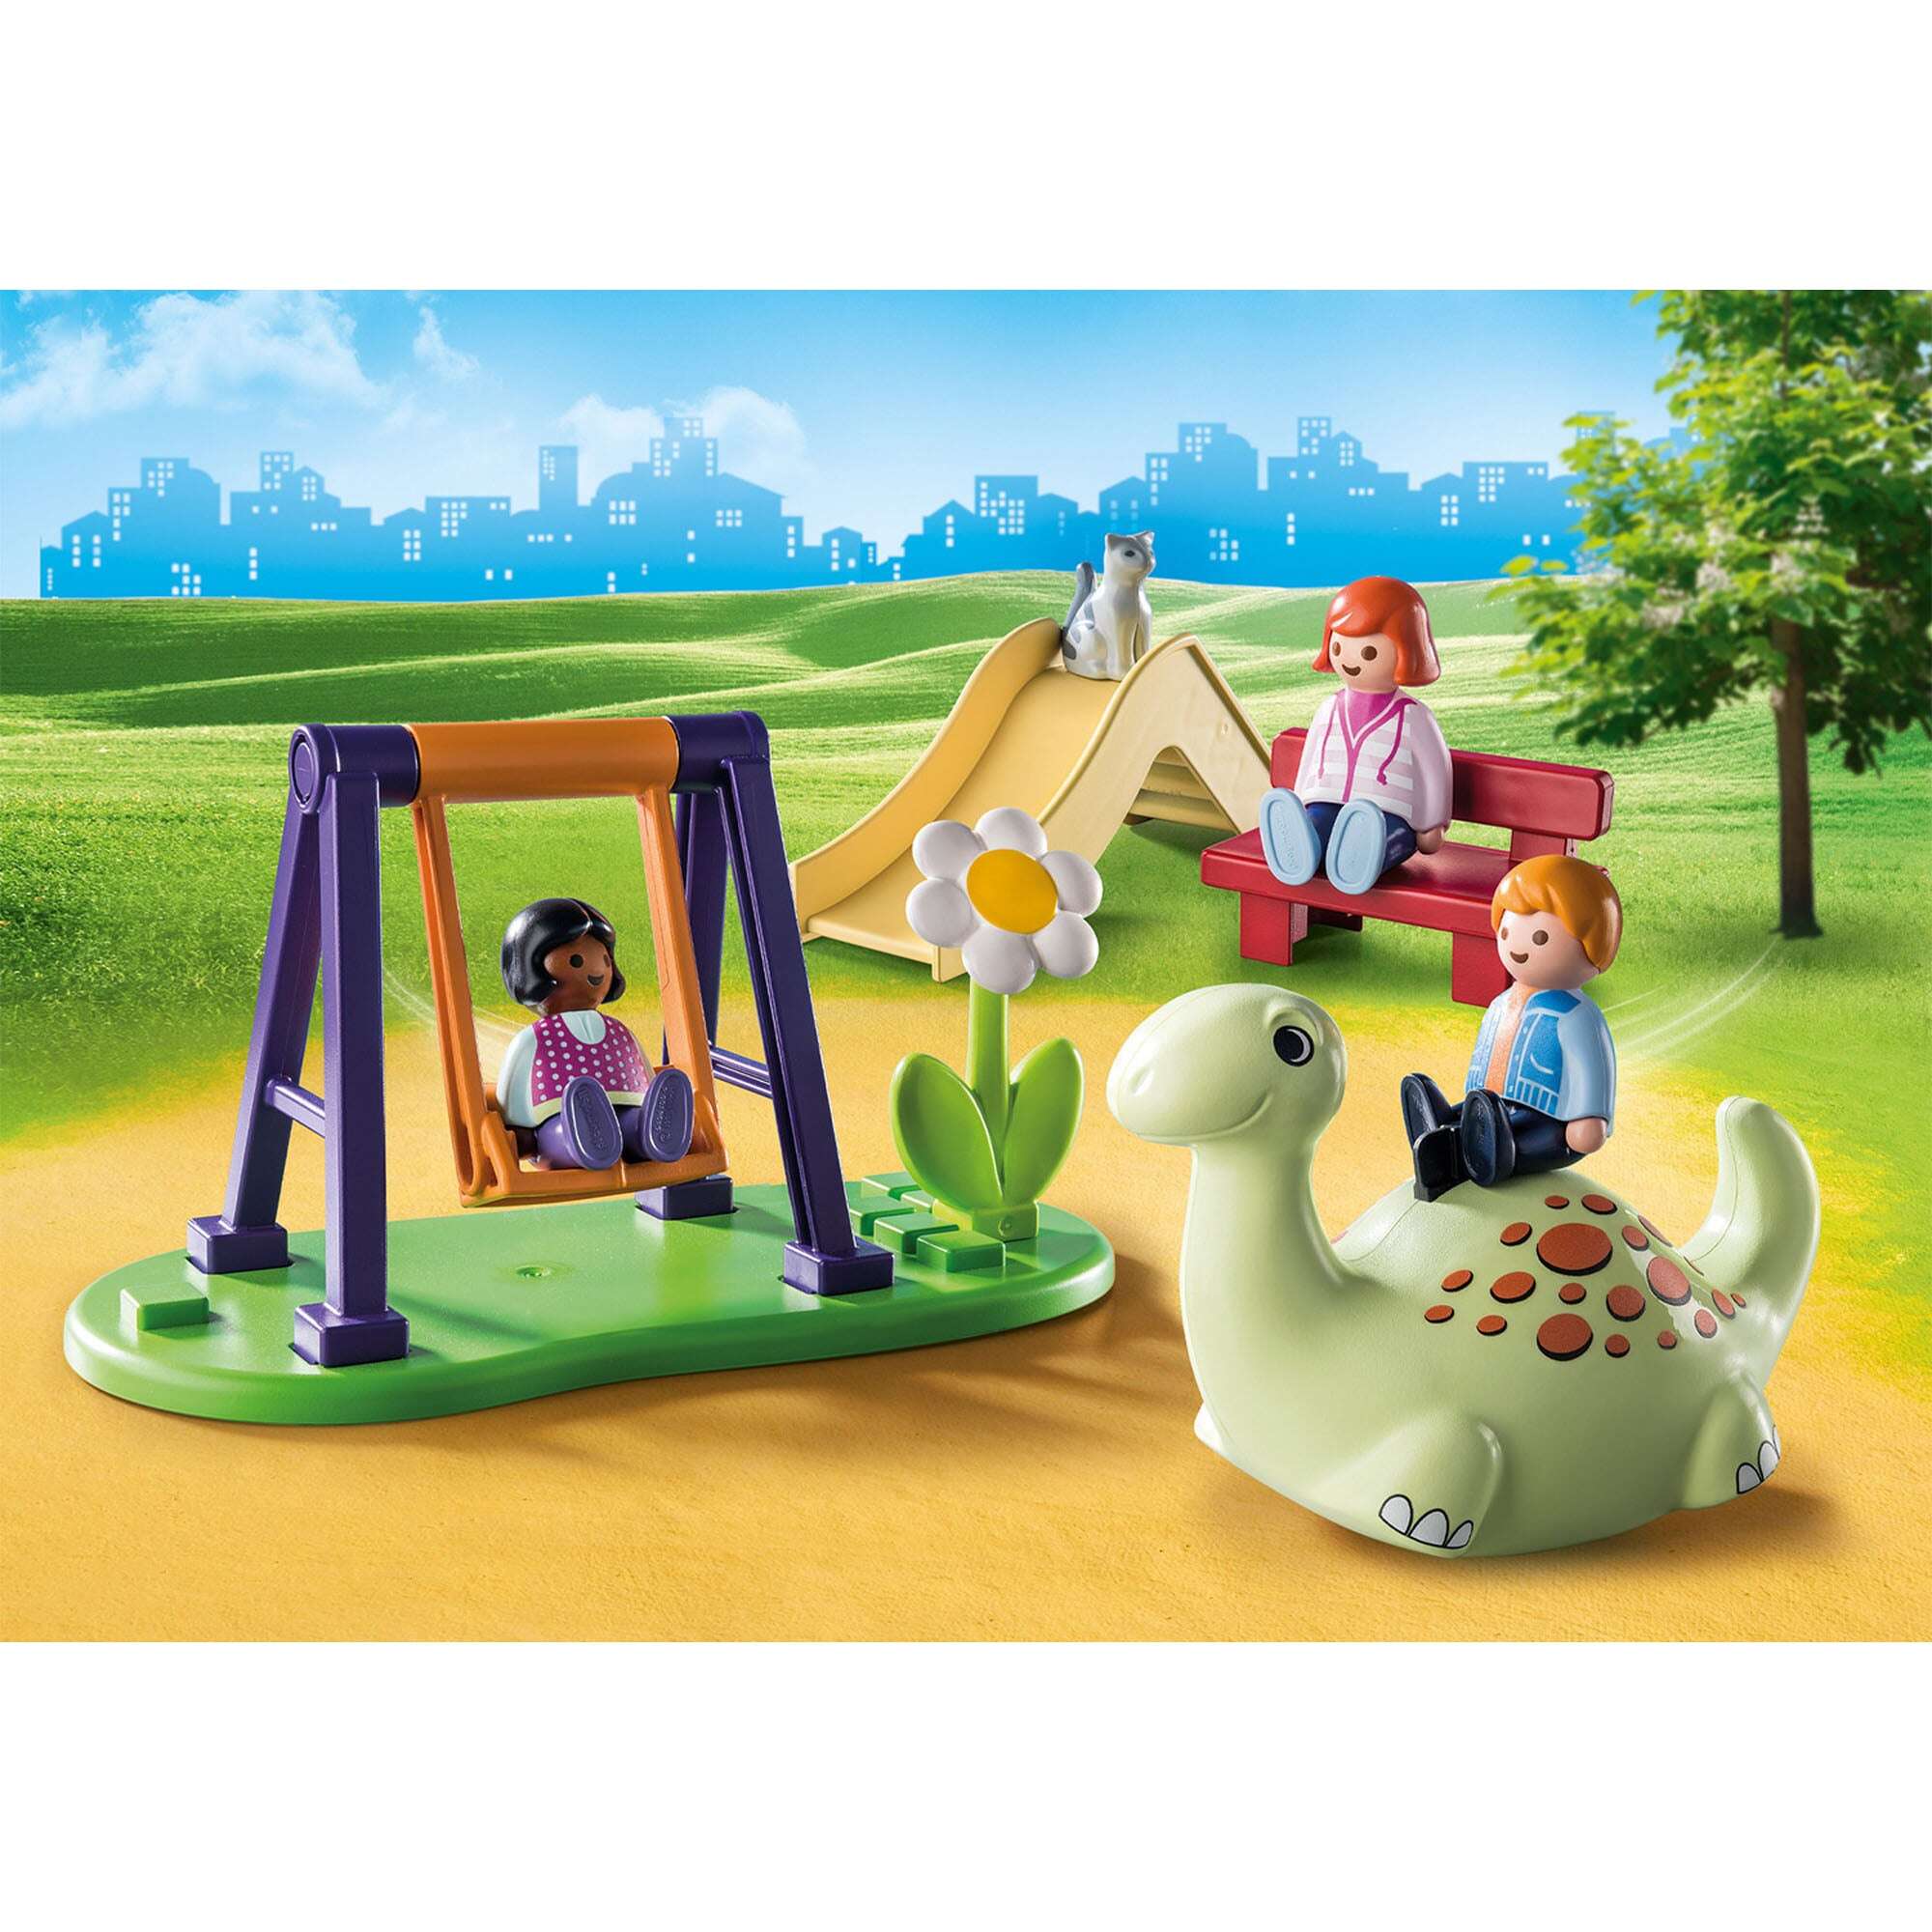 Playmobil - 1.2.3 loc de joaca pentru copii